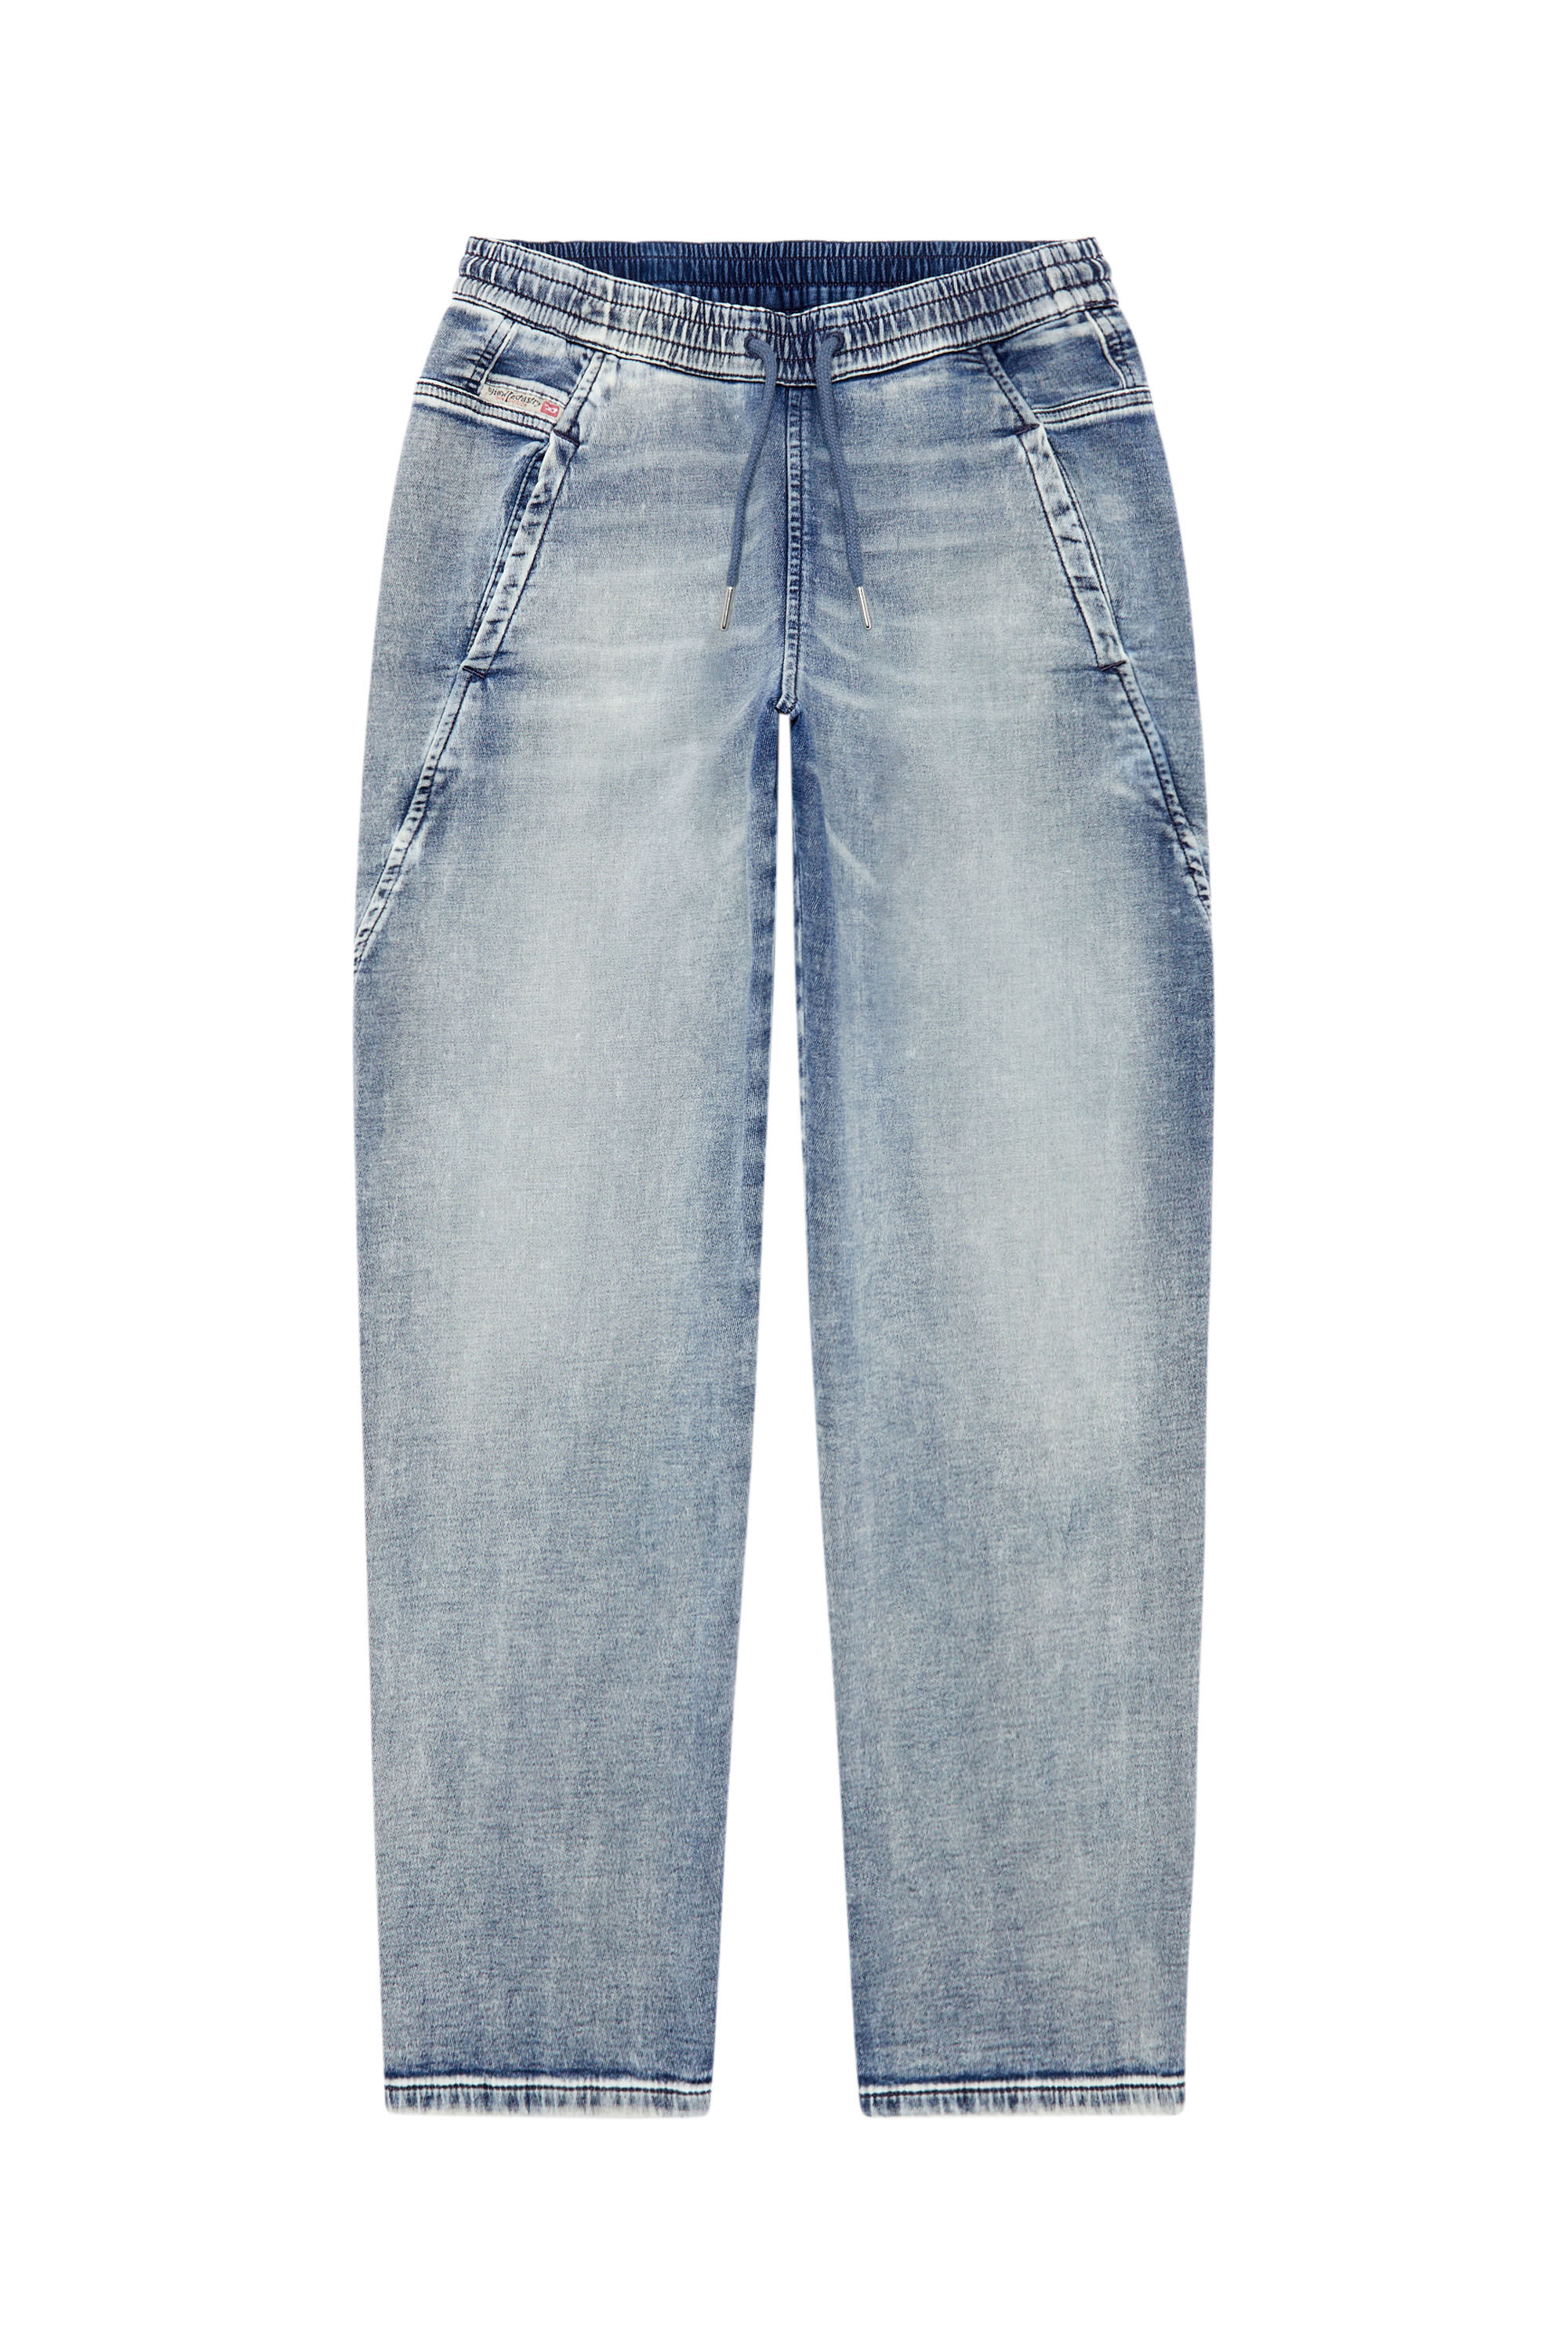 Women's Boyfriend Jeans | Medium blue | Diesel 2031 D-Krailey